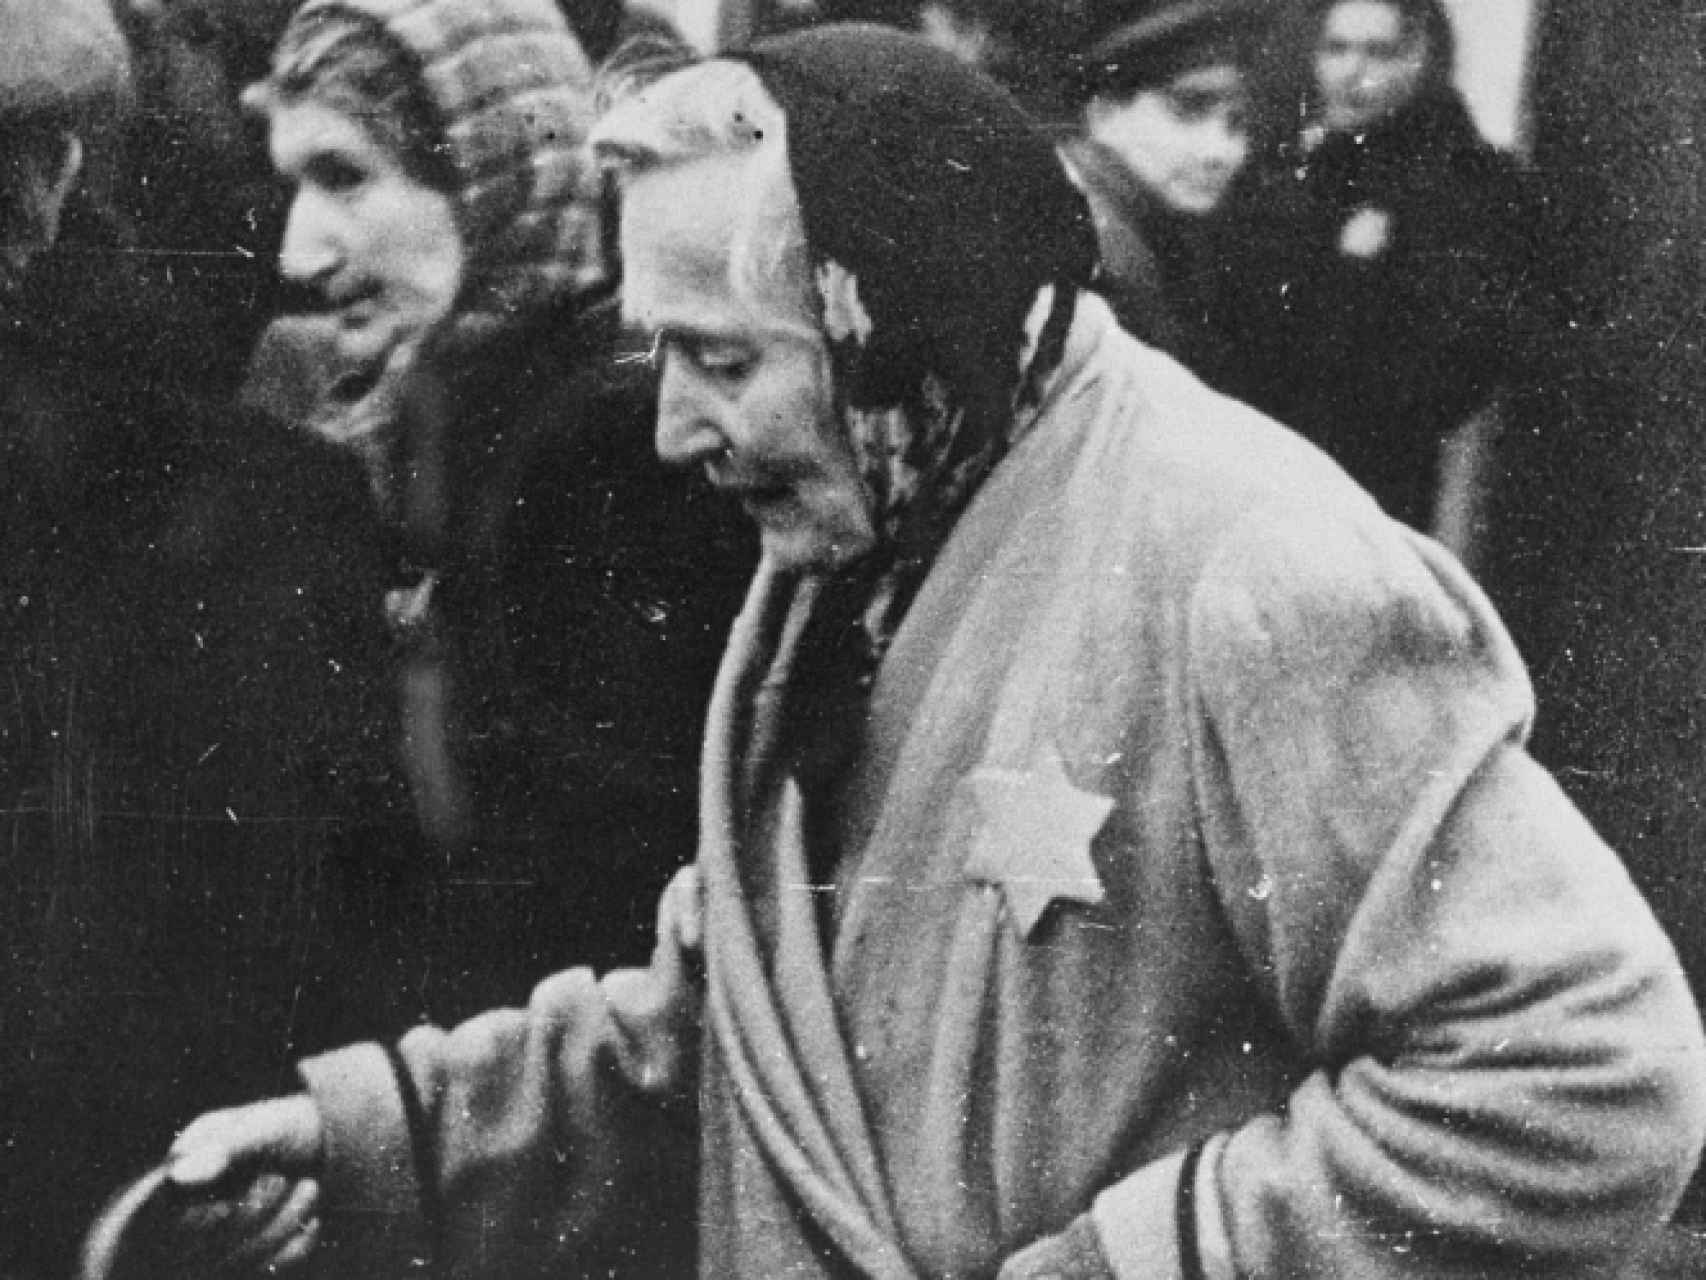 La estrella que conducía al Holocausto cumple 75 años